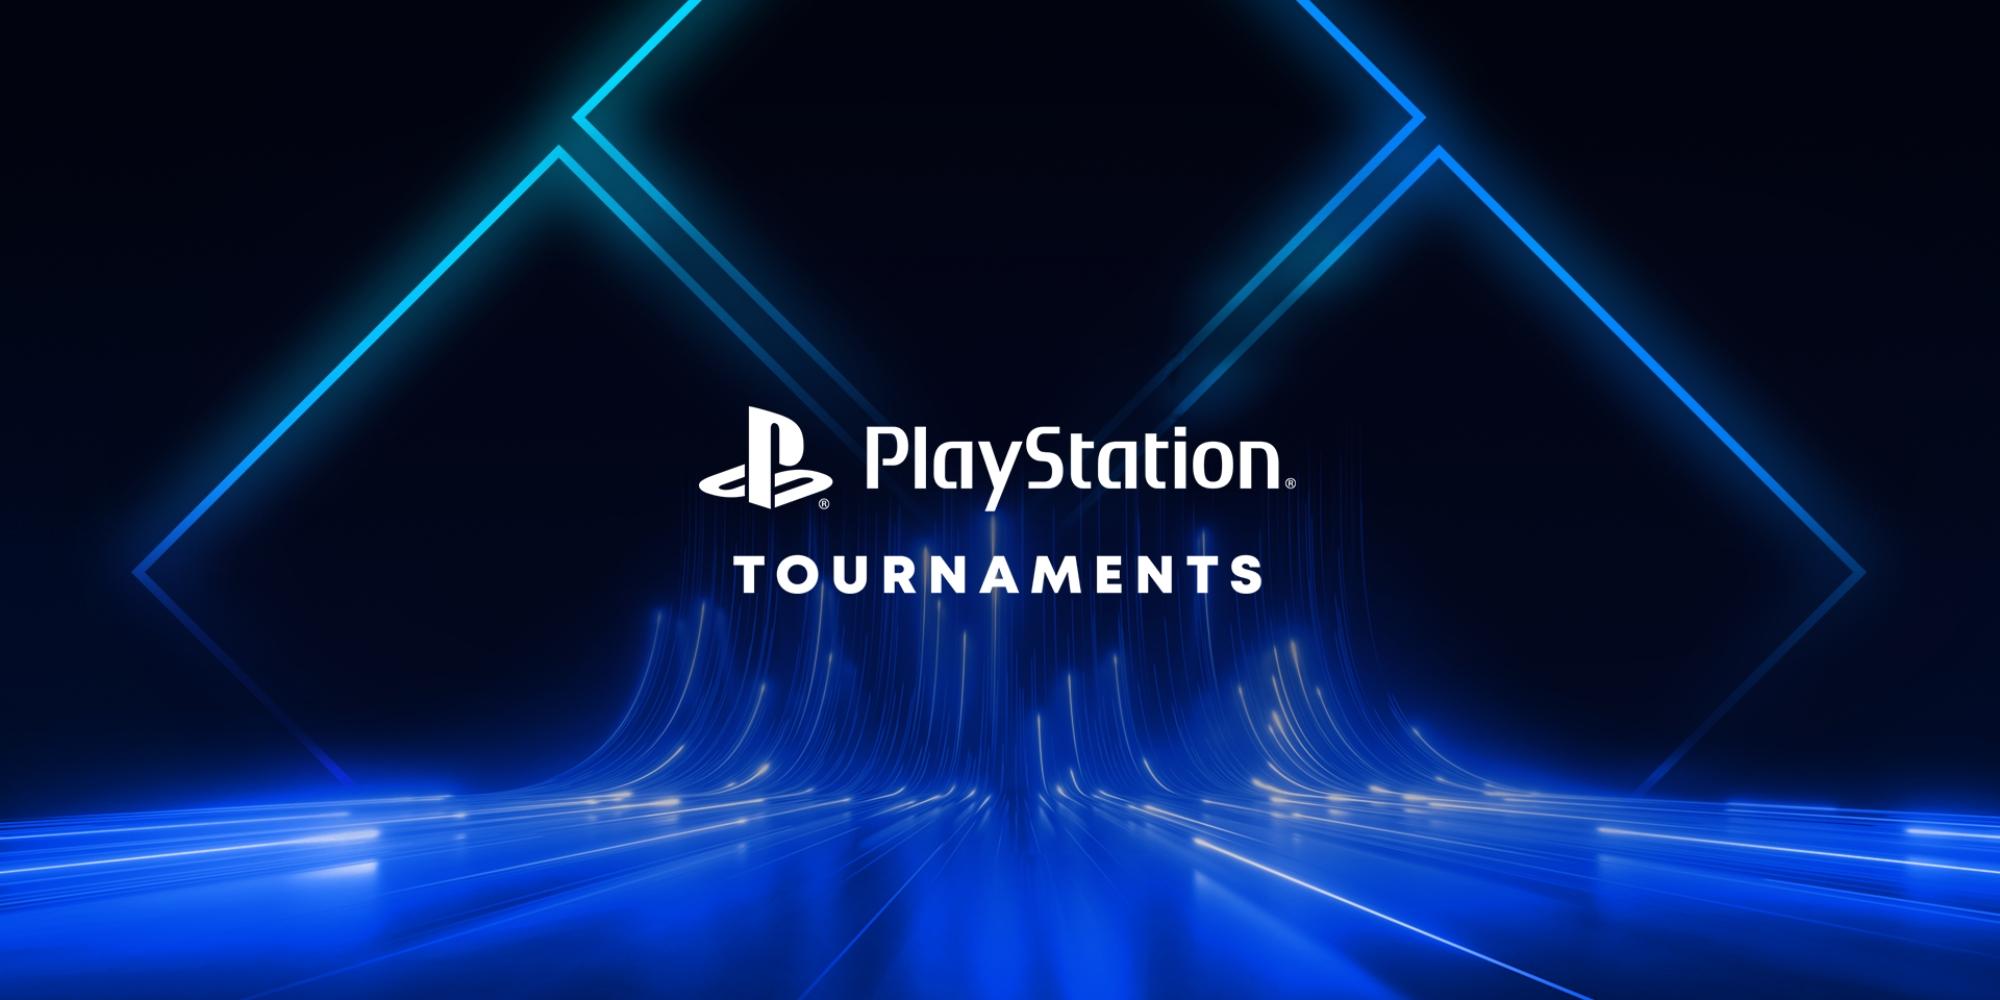 Cover Image for Junte-se aos torneios PlayStation: Road to Evo e assista cada luta!